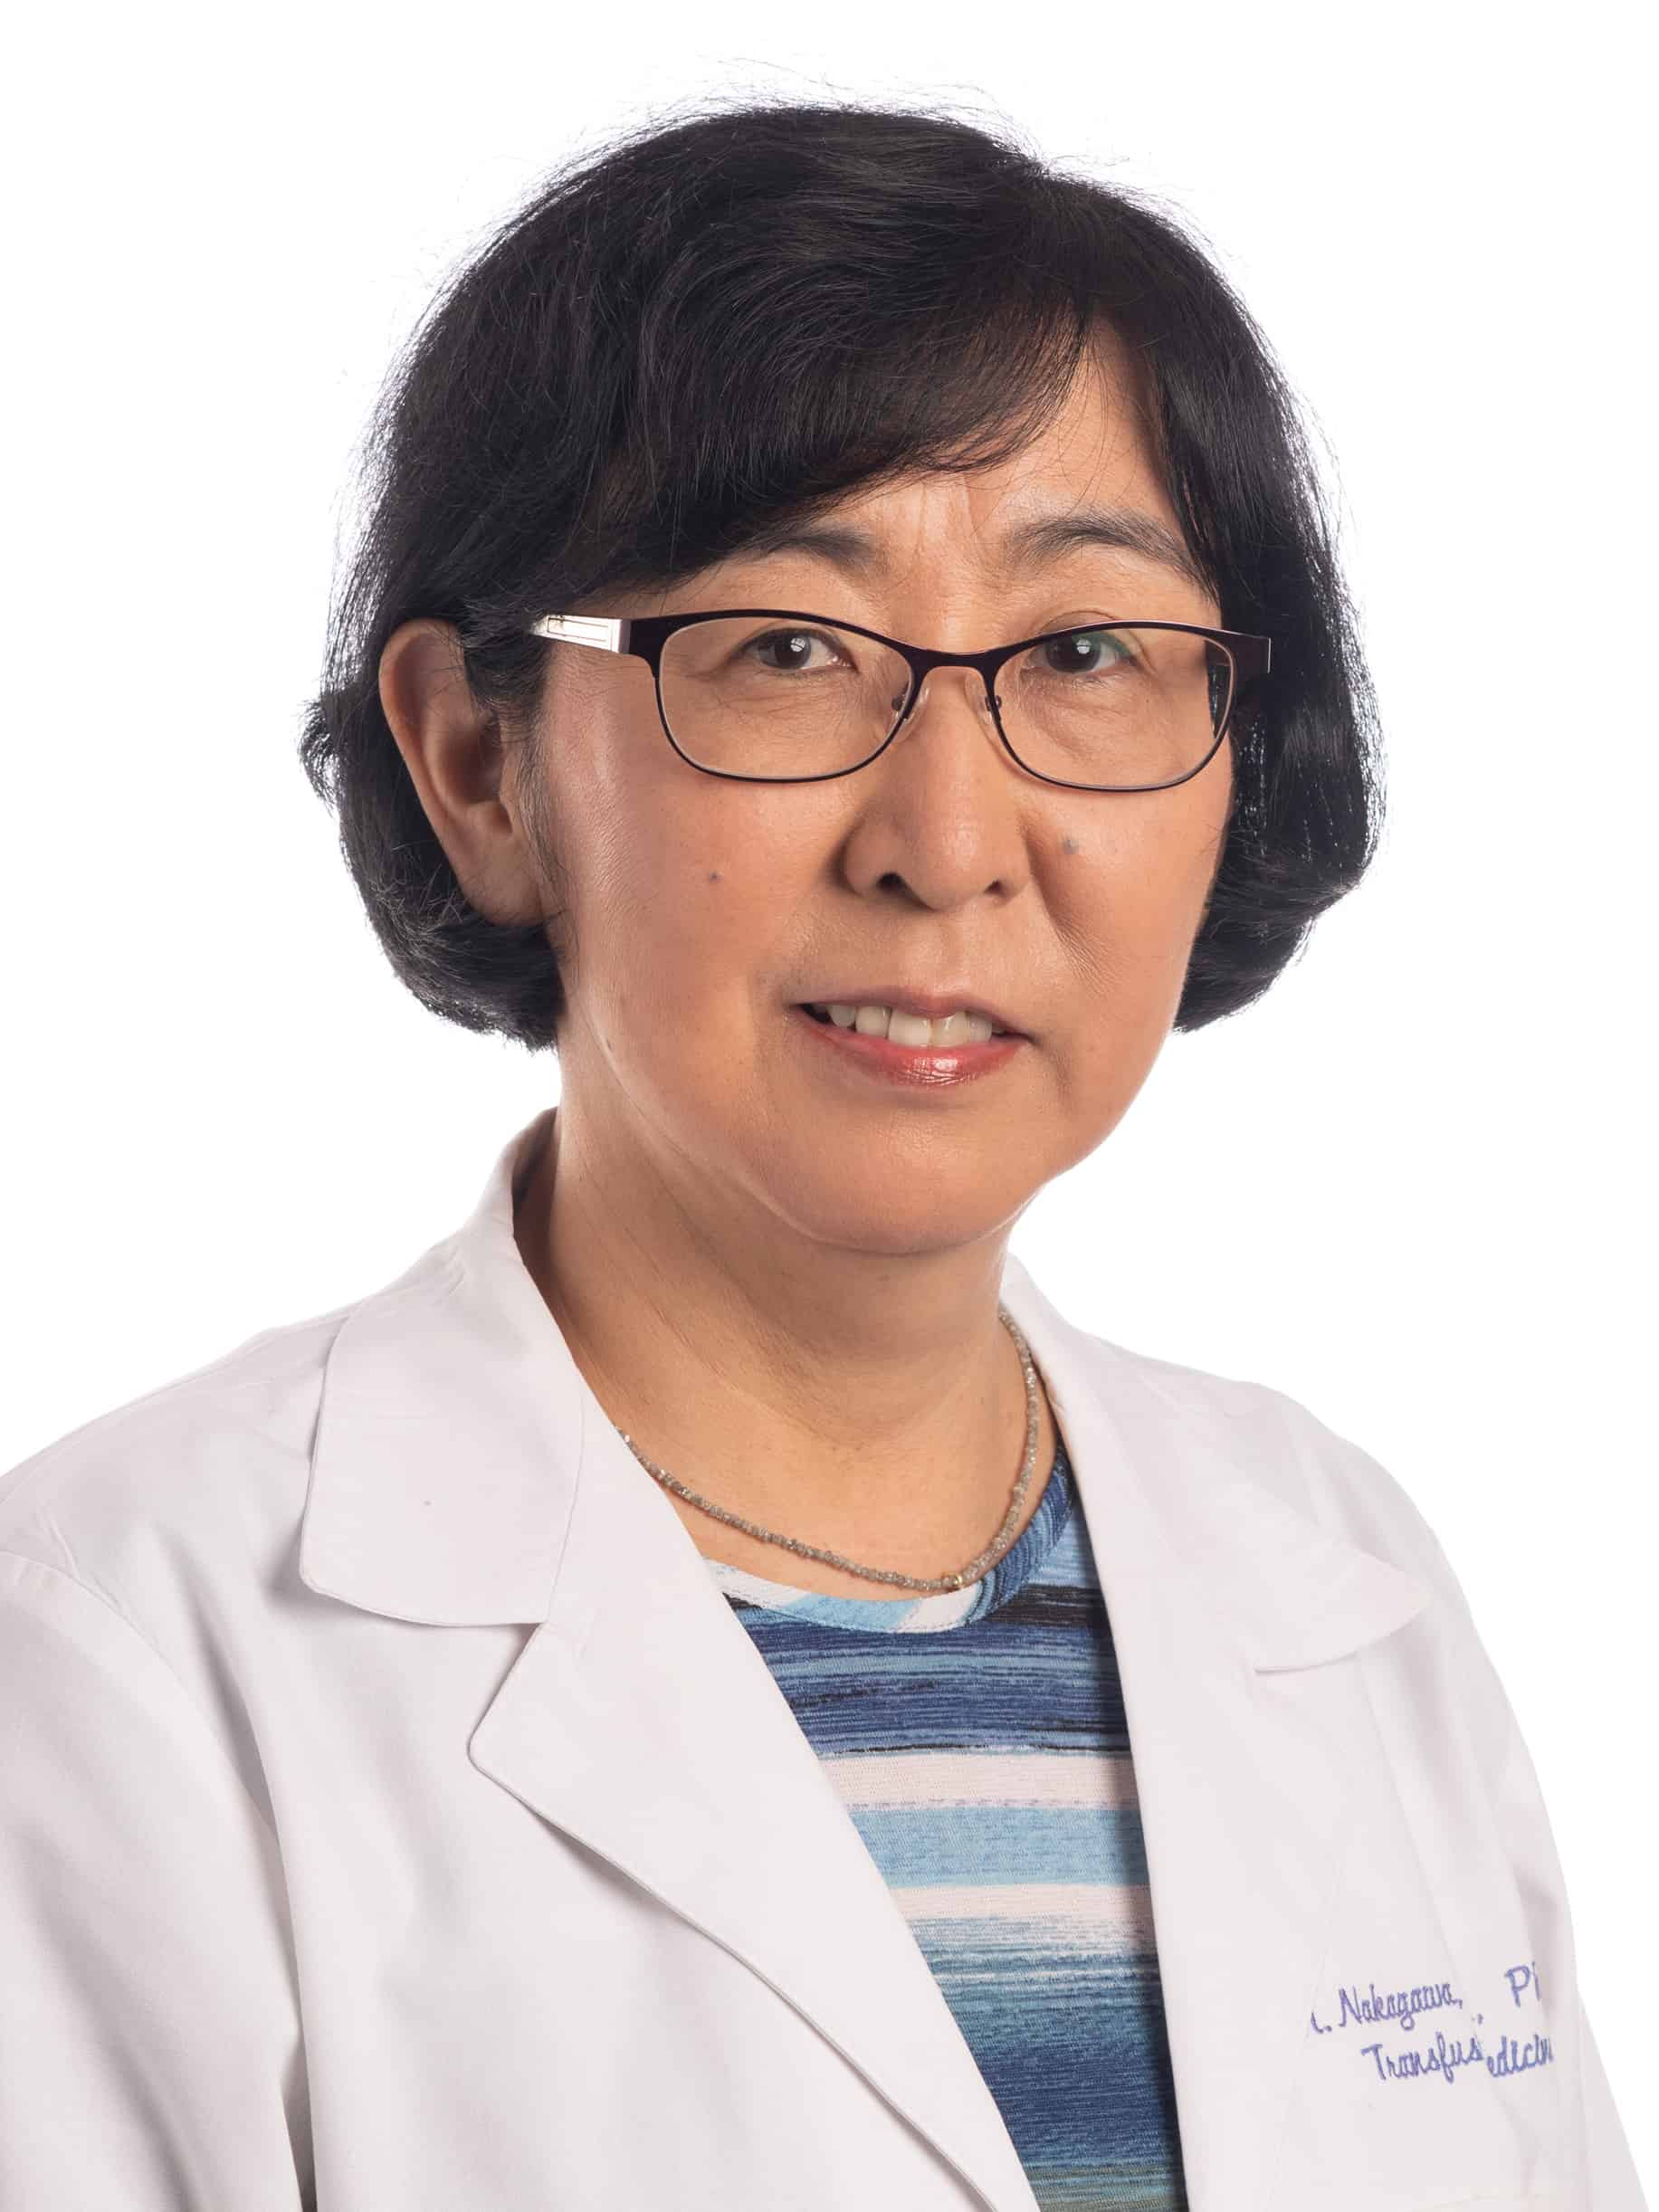 Mayumi Nakagawa, M.D., Ph.D.